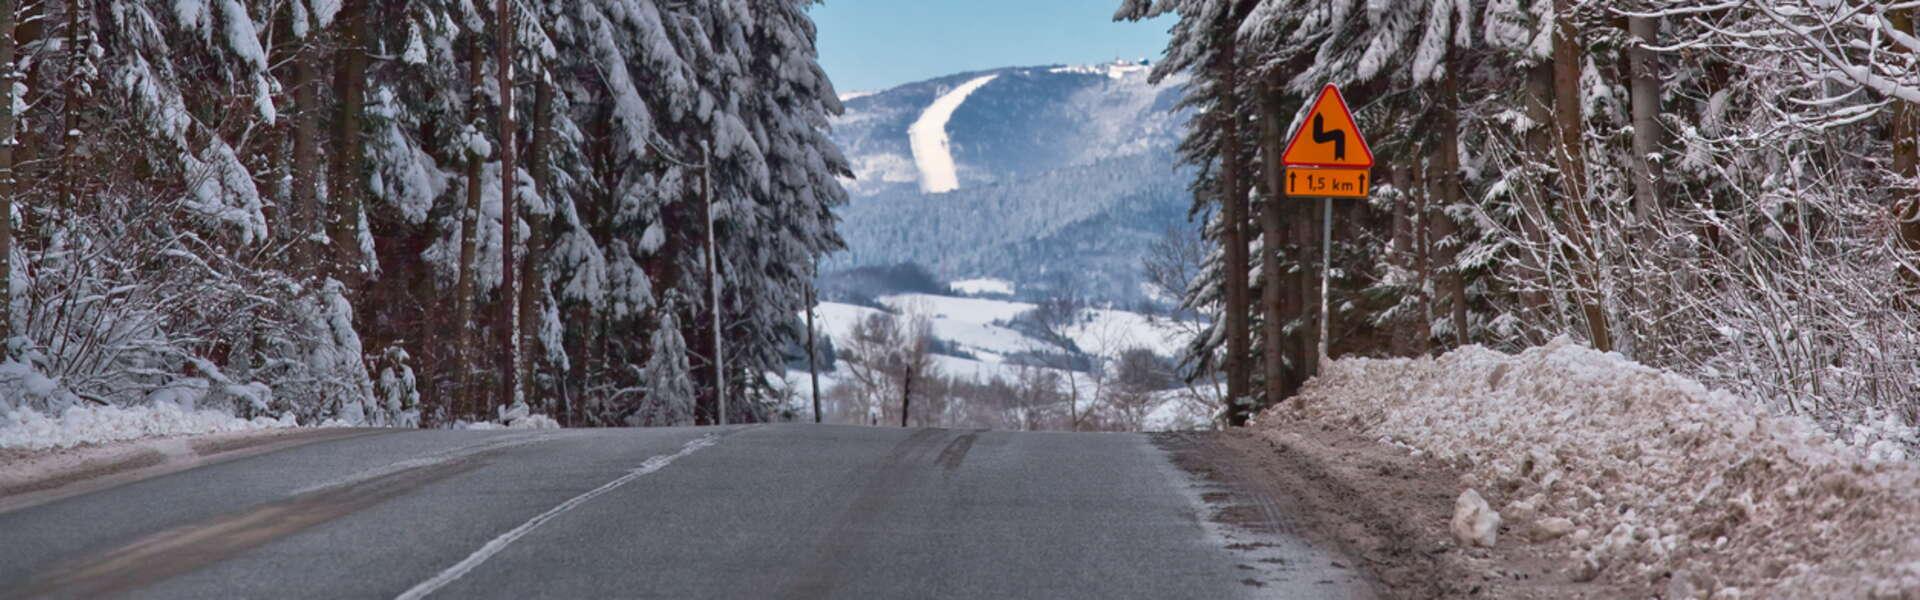 Bild: Jak płynnie i bezpiecznie dojechać do zimowych górskich kurortów Małopolski